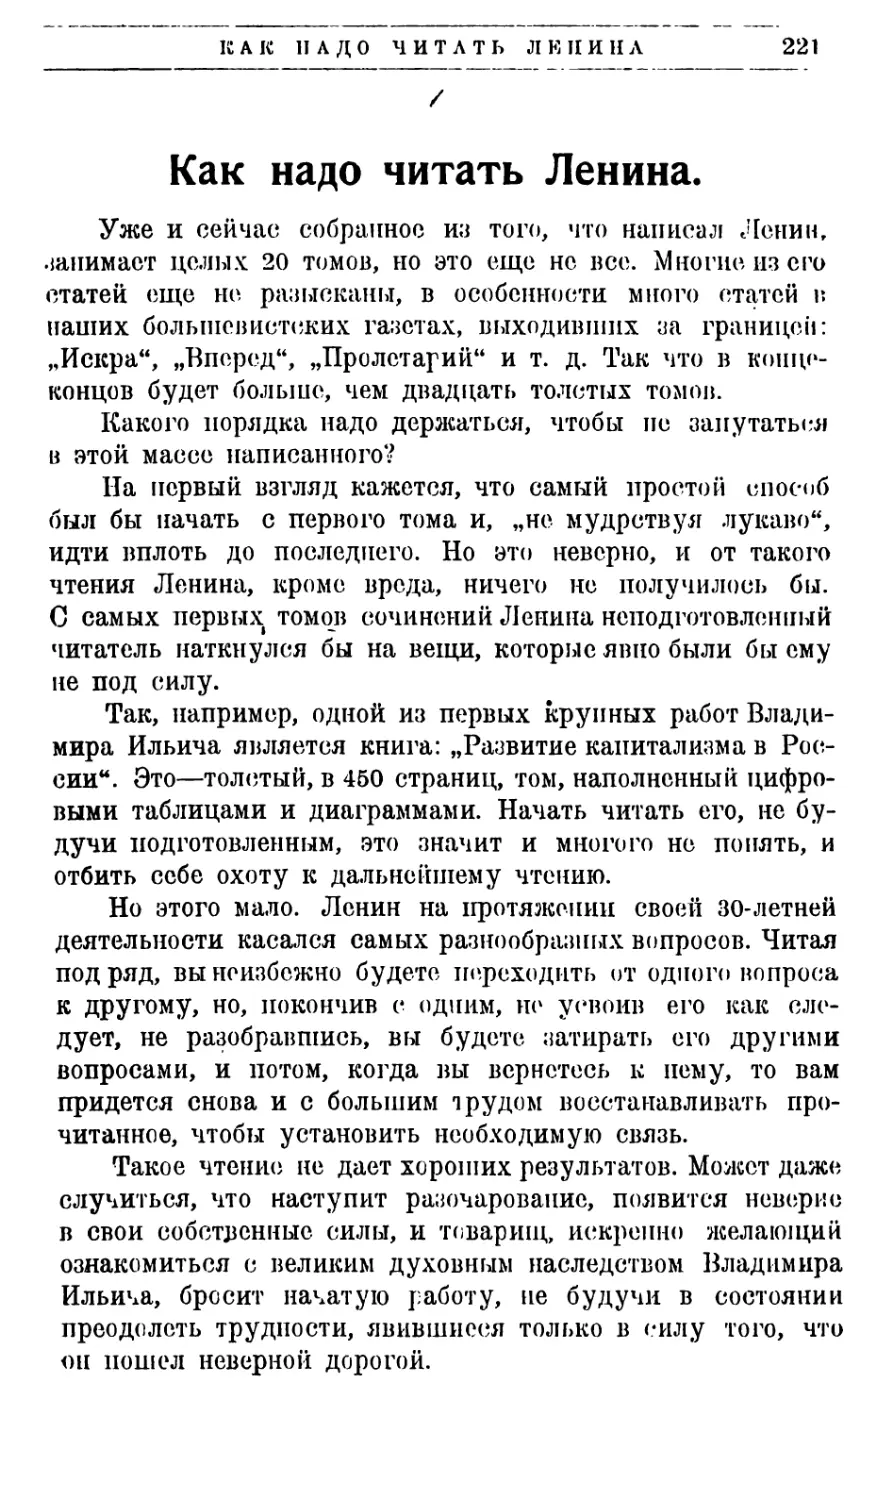 В. Лосев—Как надо читать Ленина